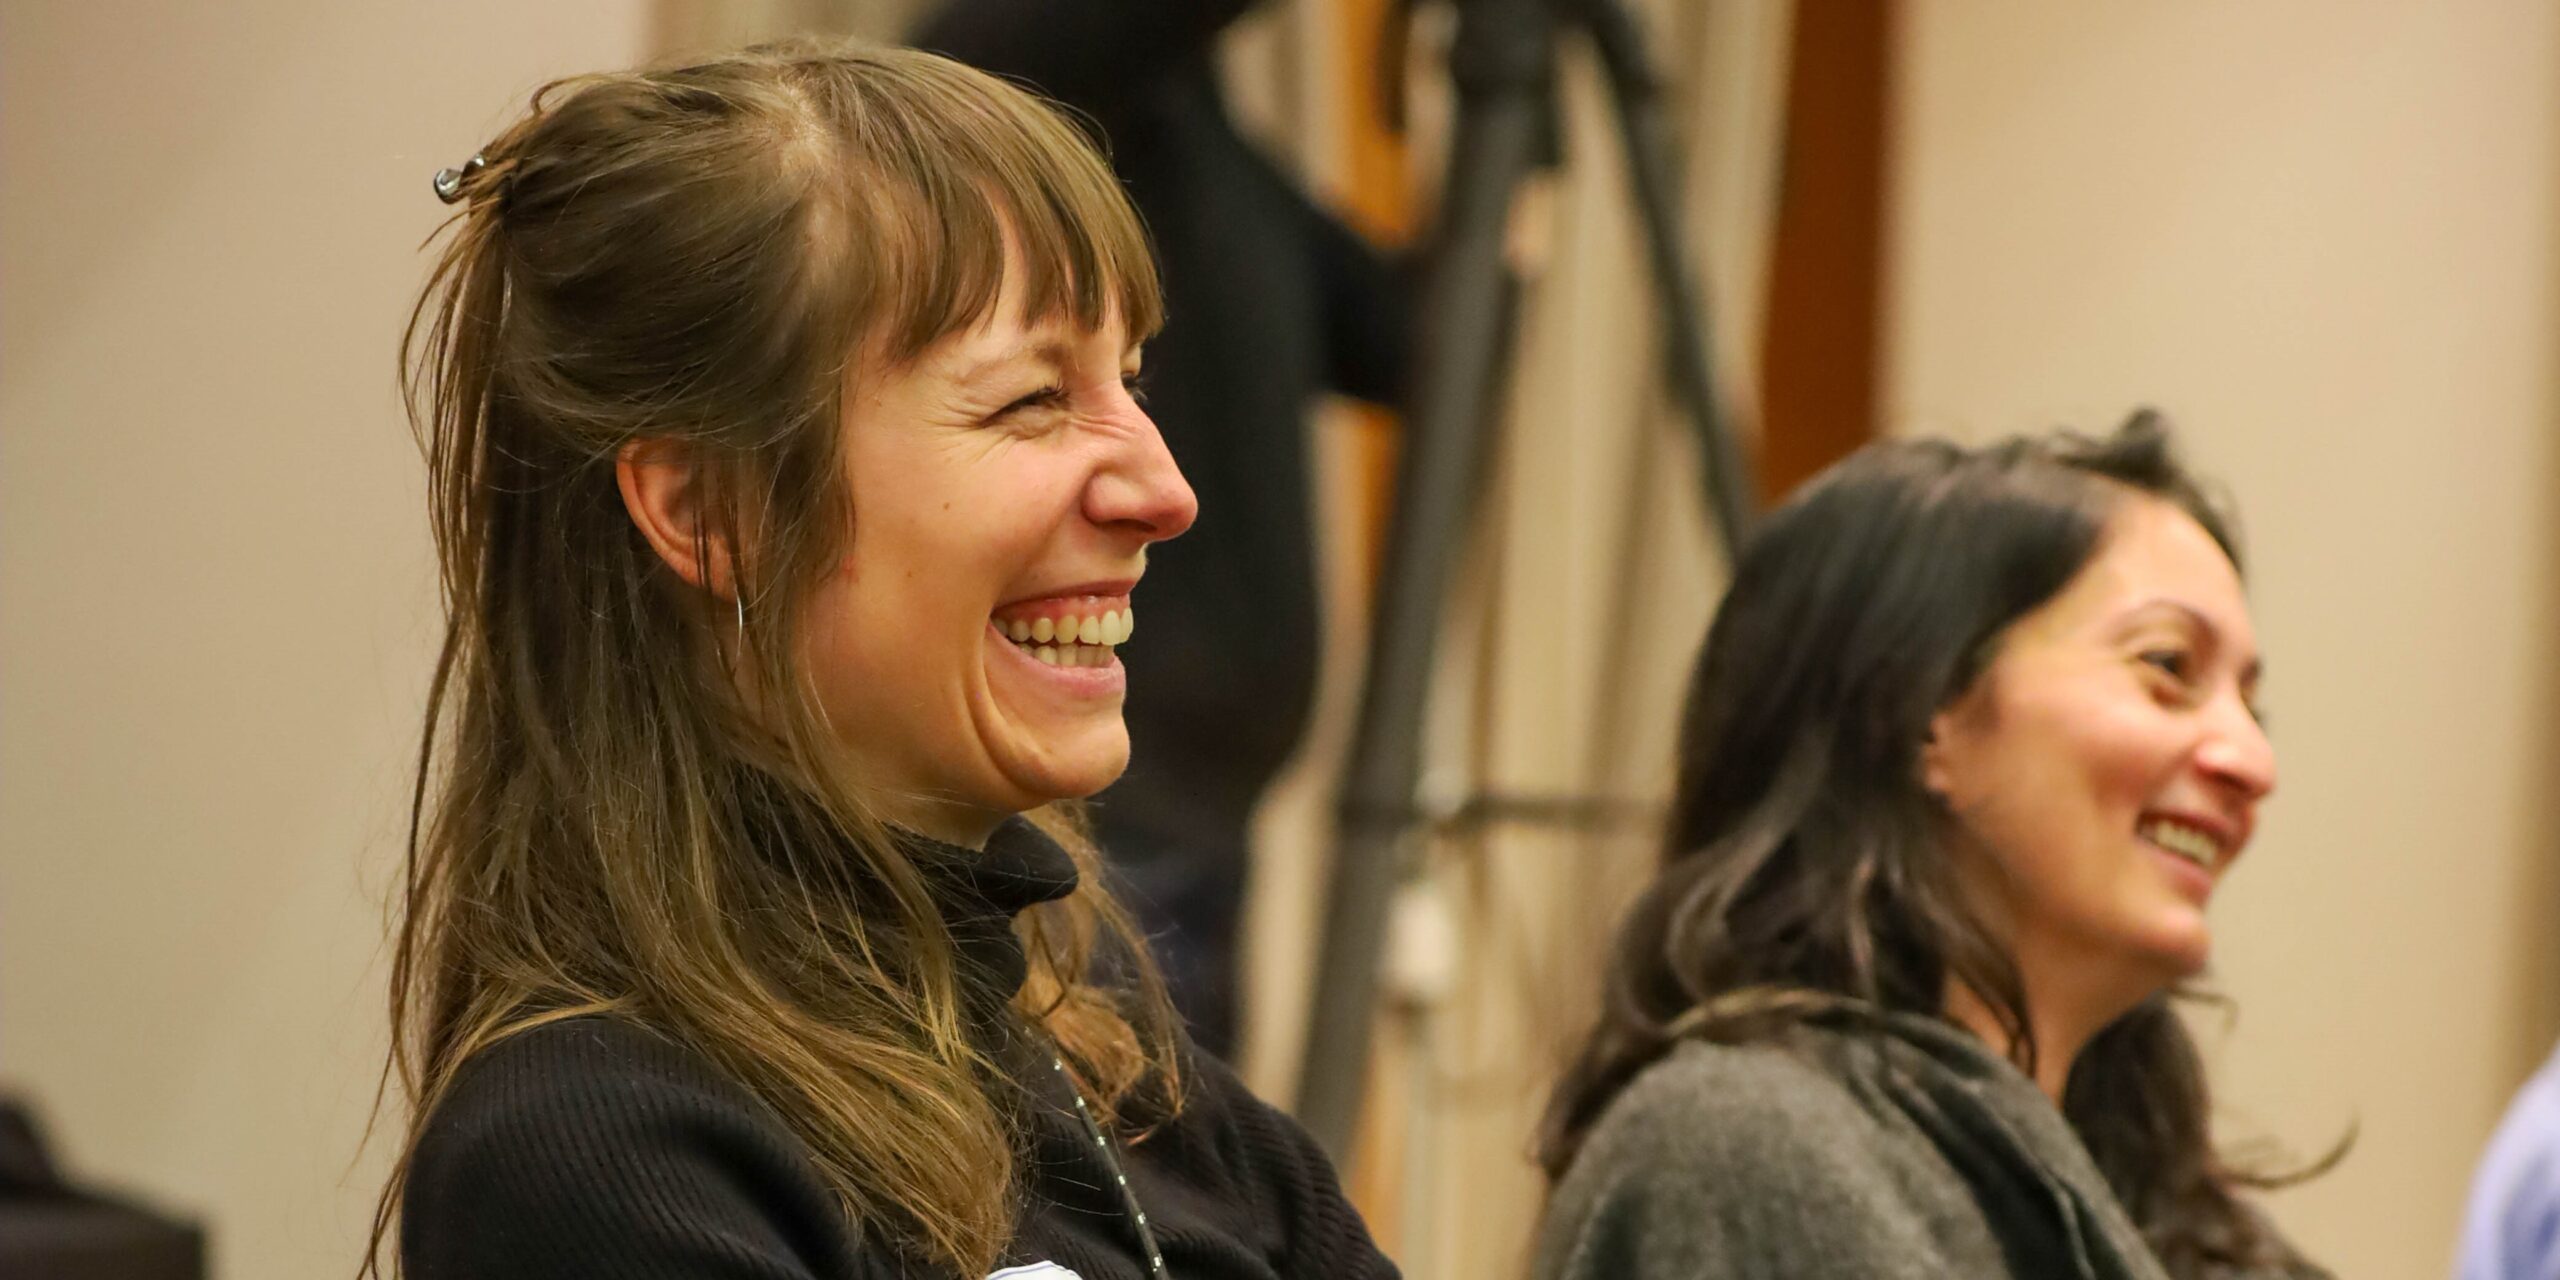 Zwei junge Frauen auf einer Veranstaltung die über einen Beitrag lachen und glücklich aussehen.